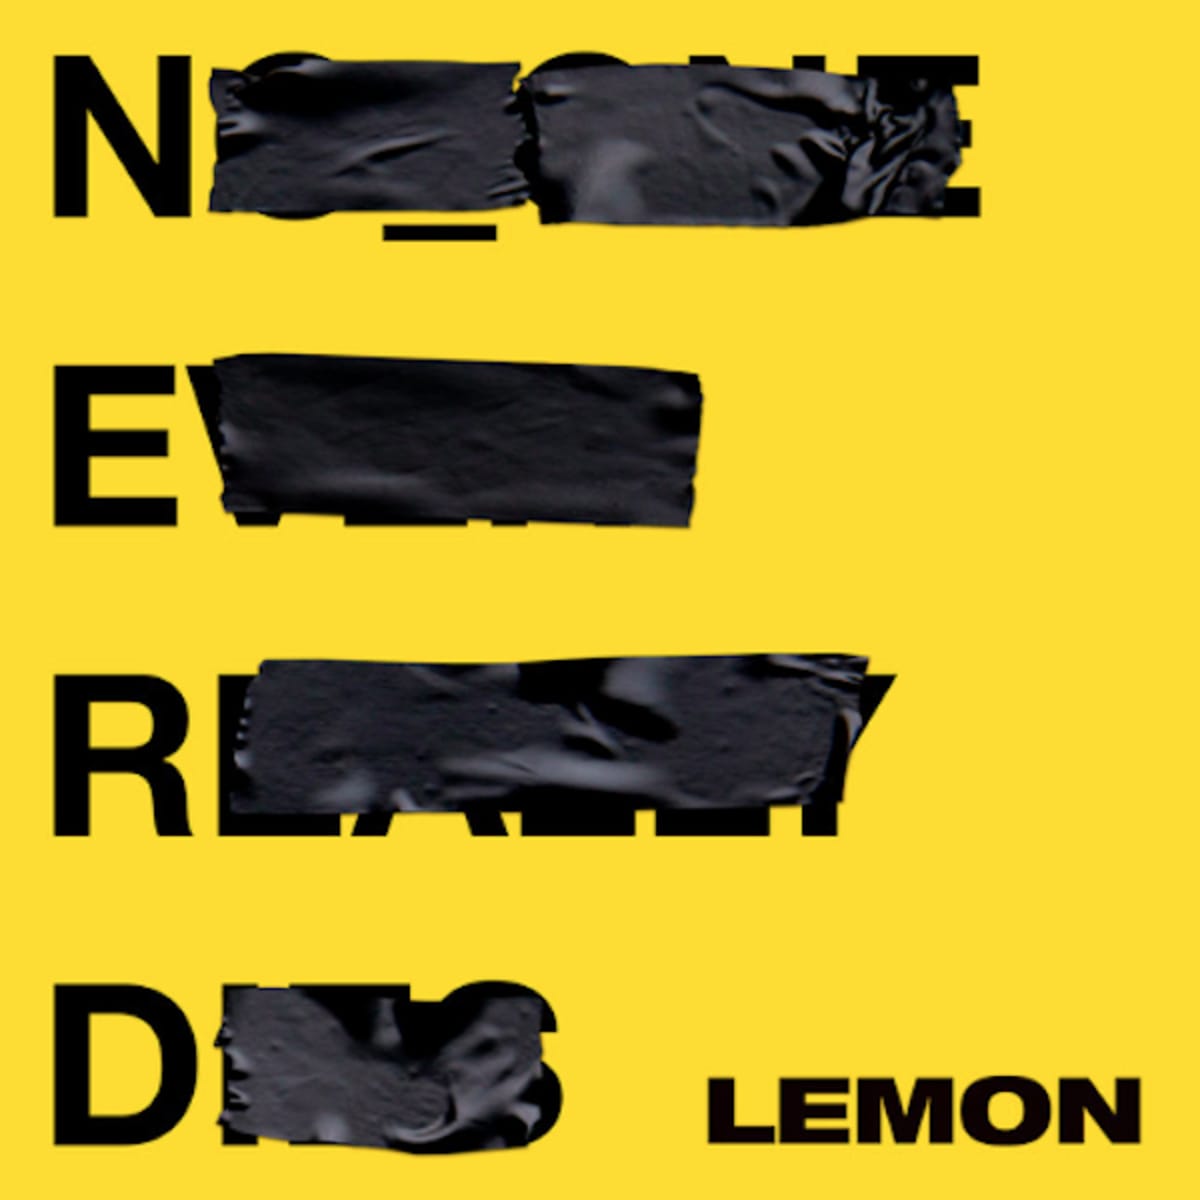 lemon-nerd